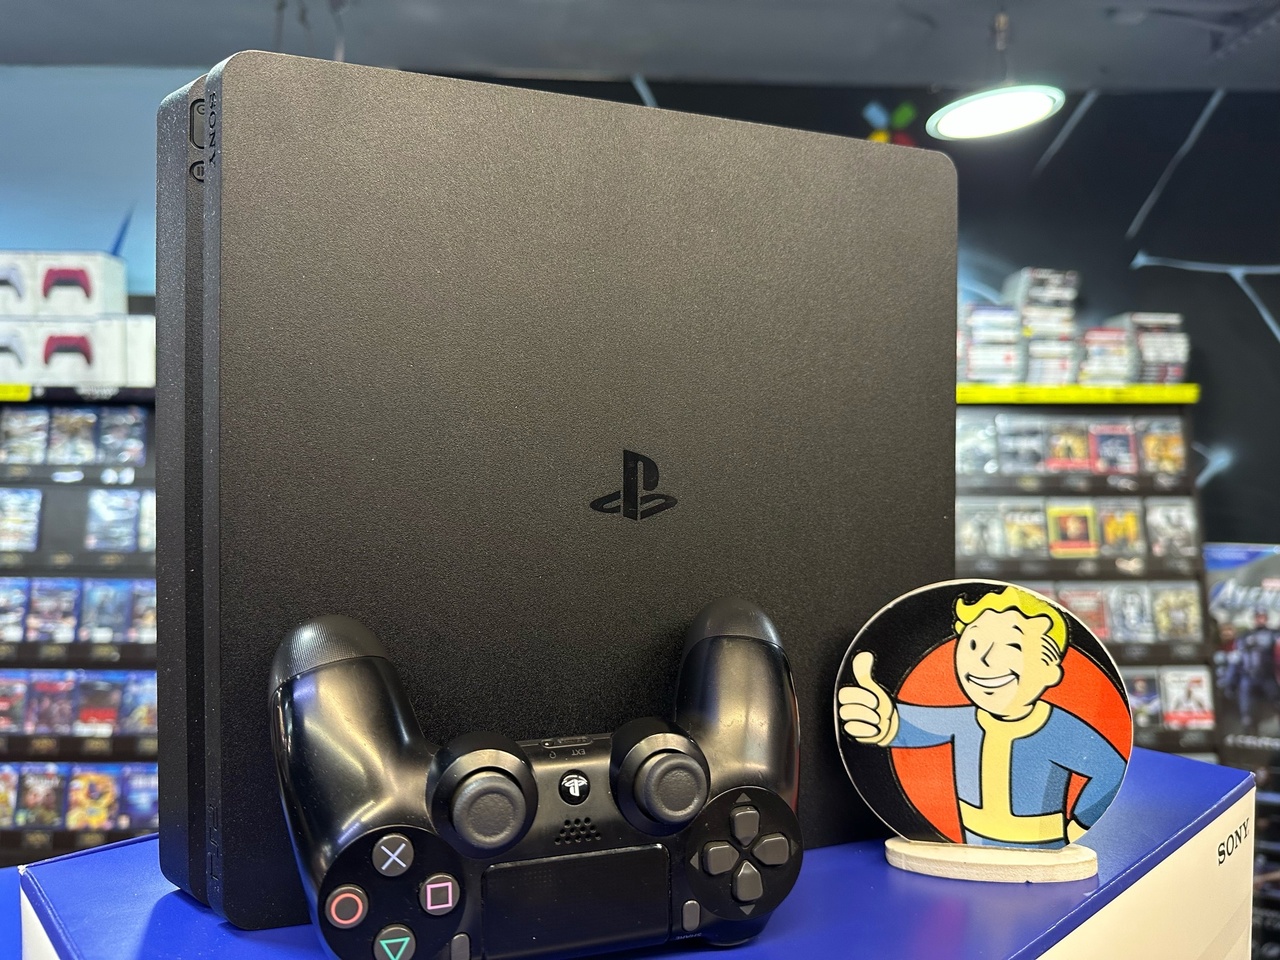 Игровая консоль Sony Playstation 4 Slim 1tb (б/у)